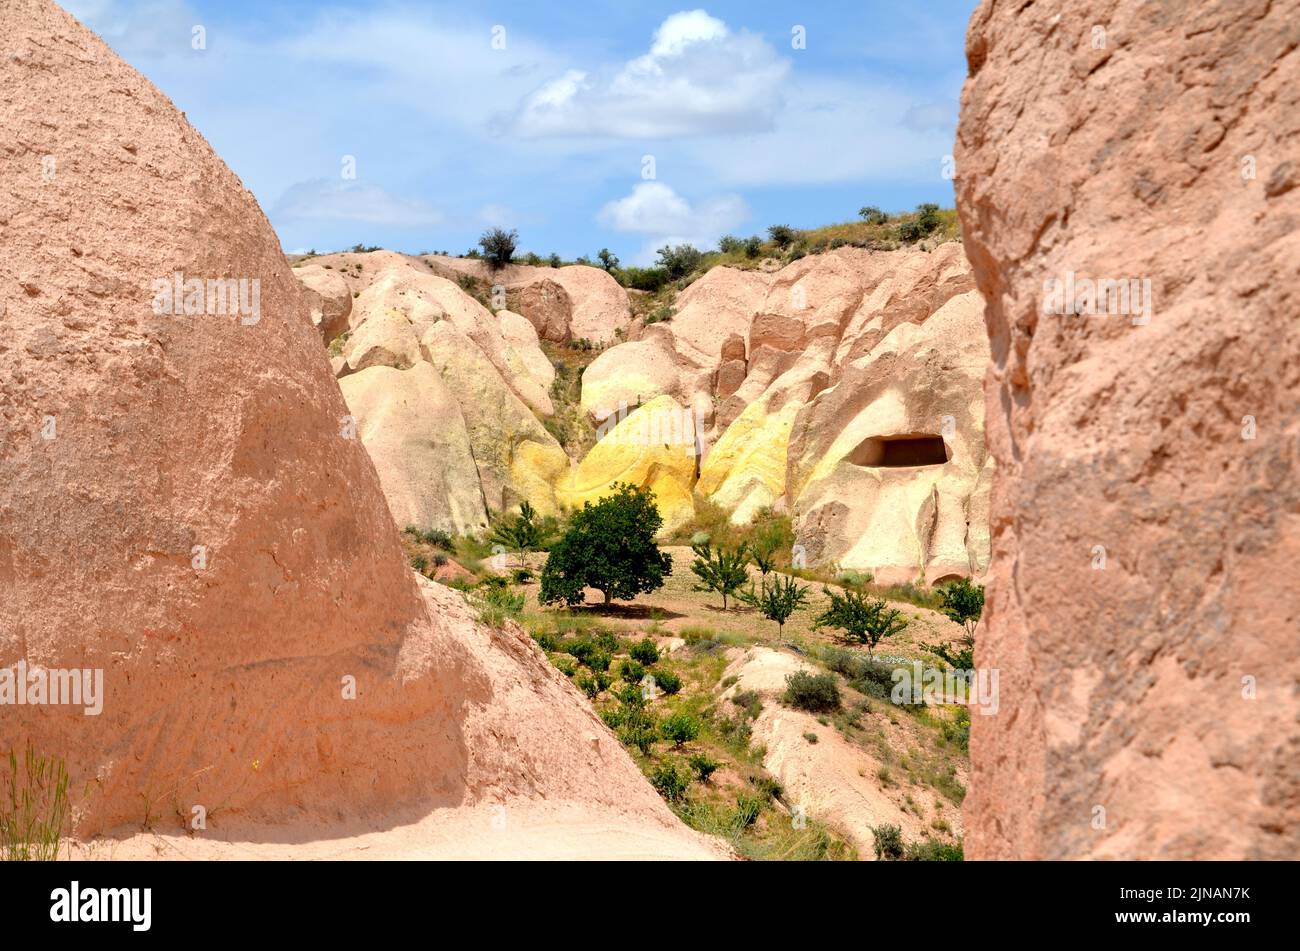 paysage avec arbres et formations rocheuses volcaniques dans la vallée de la 'red', cappadoce turquie Banque D'Images